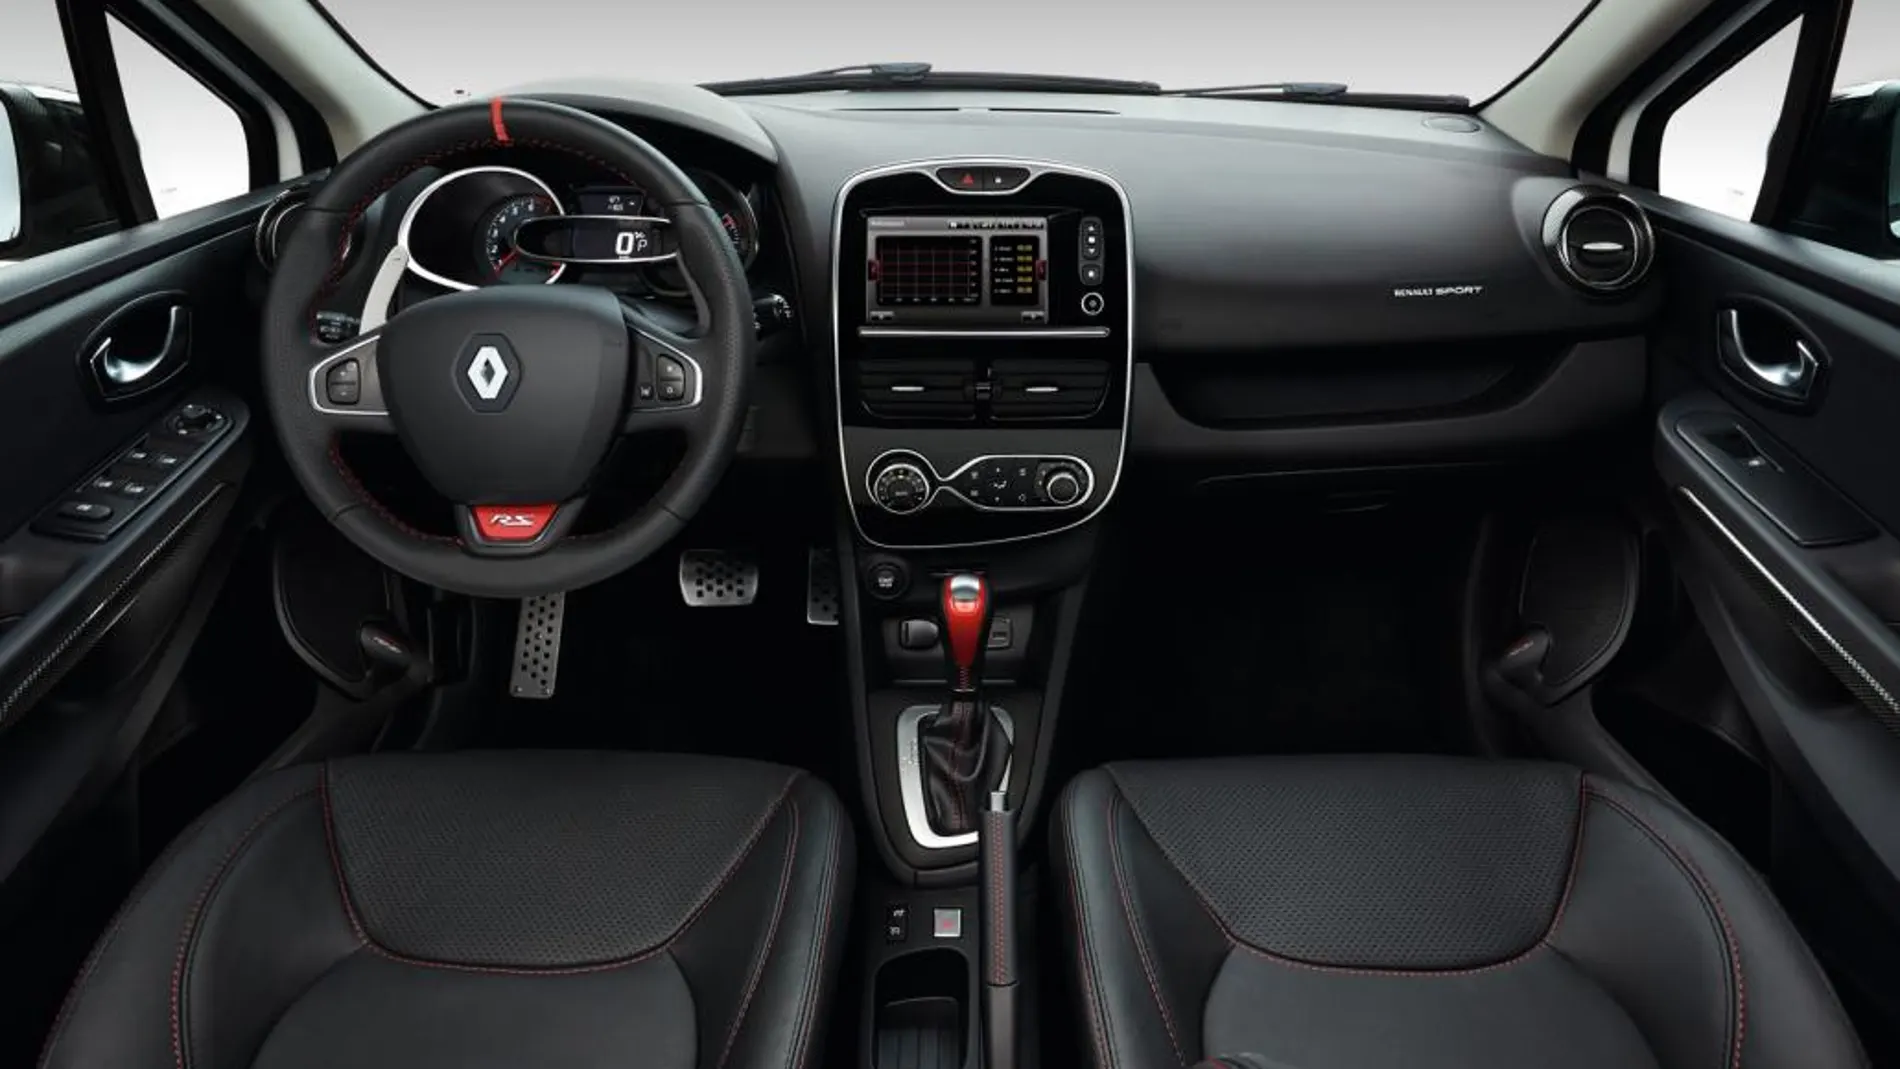 El interior cuenta con volante y asientos en piel y reposacabezas integrados.